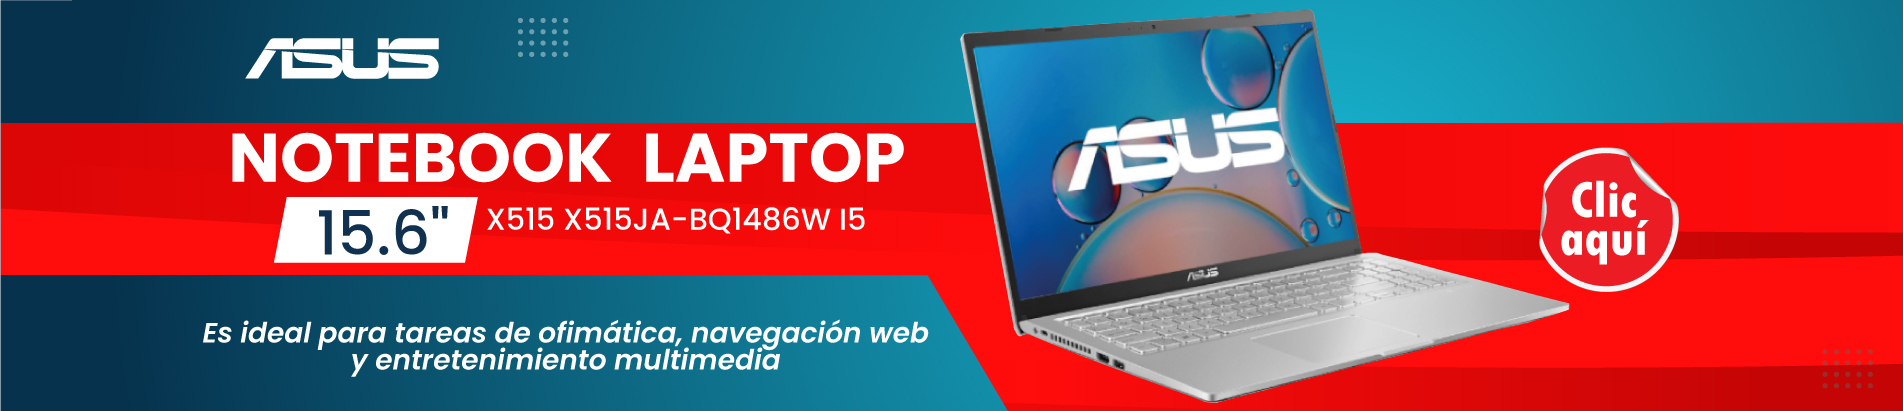 Notebook ASUS Laptop X515 X515JA-BQ1486W I5 15.6"FHD